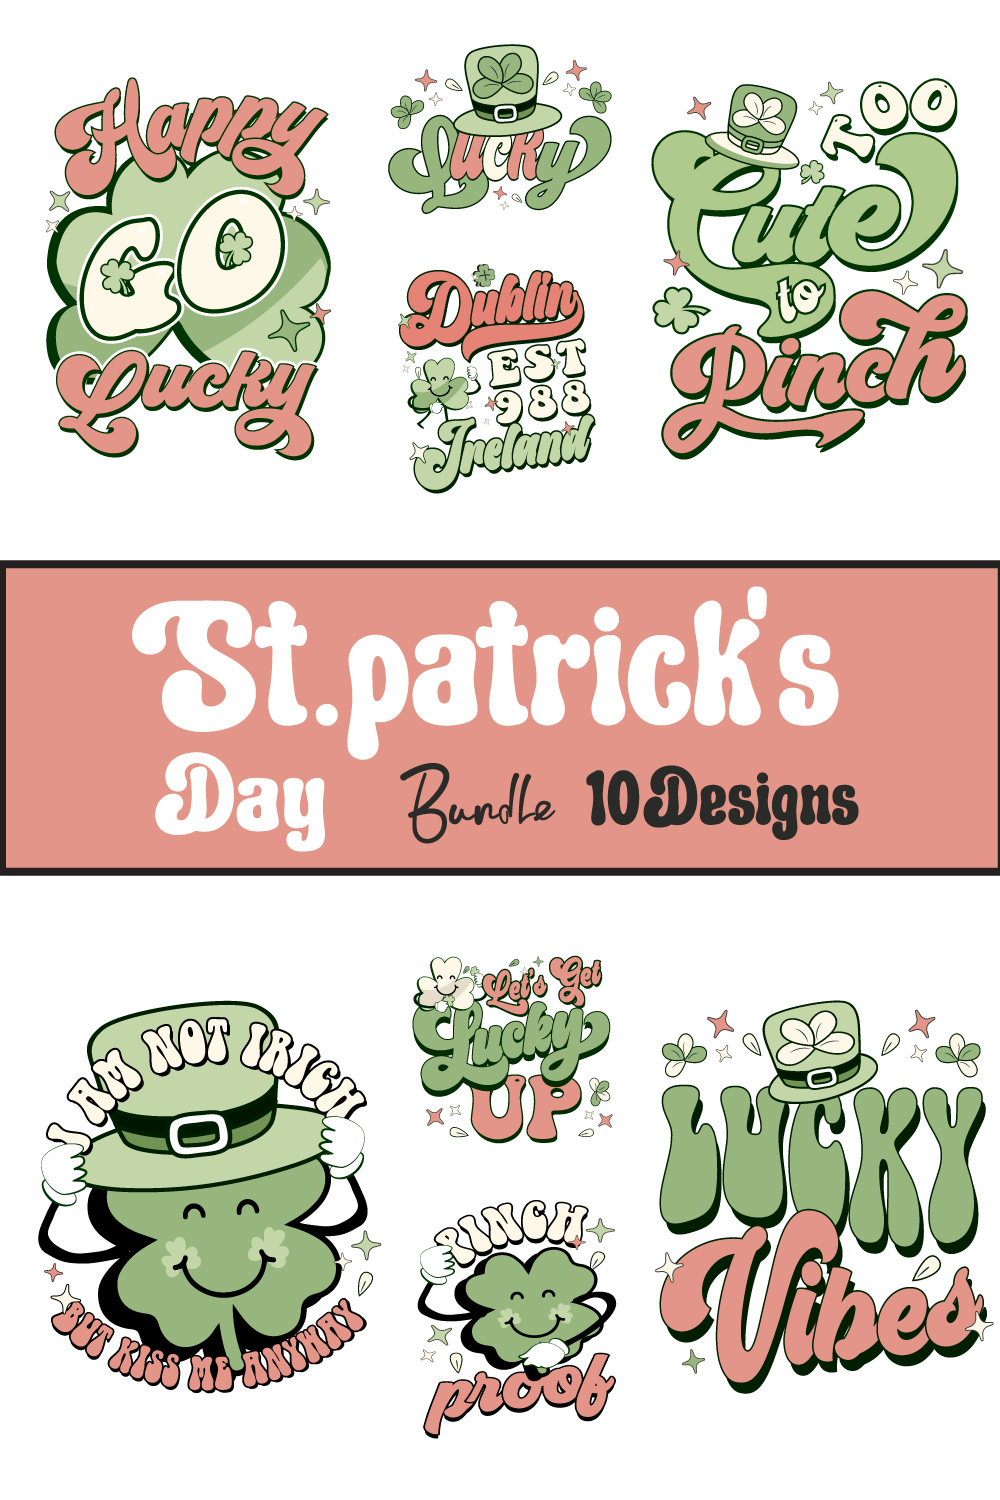 St Patrick’s Day SVG Sublimation Bundle pinterest preview image.